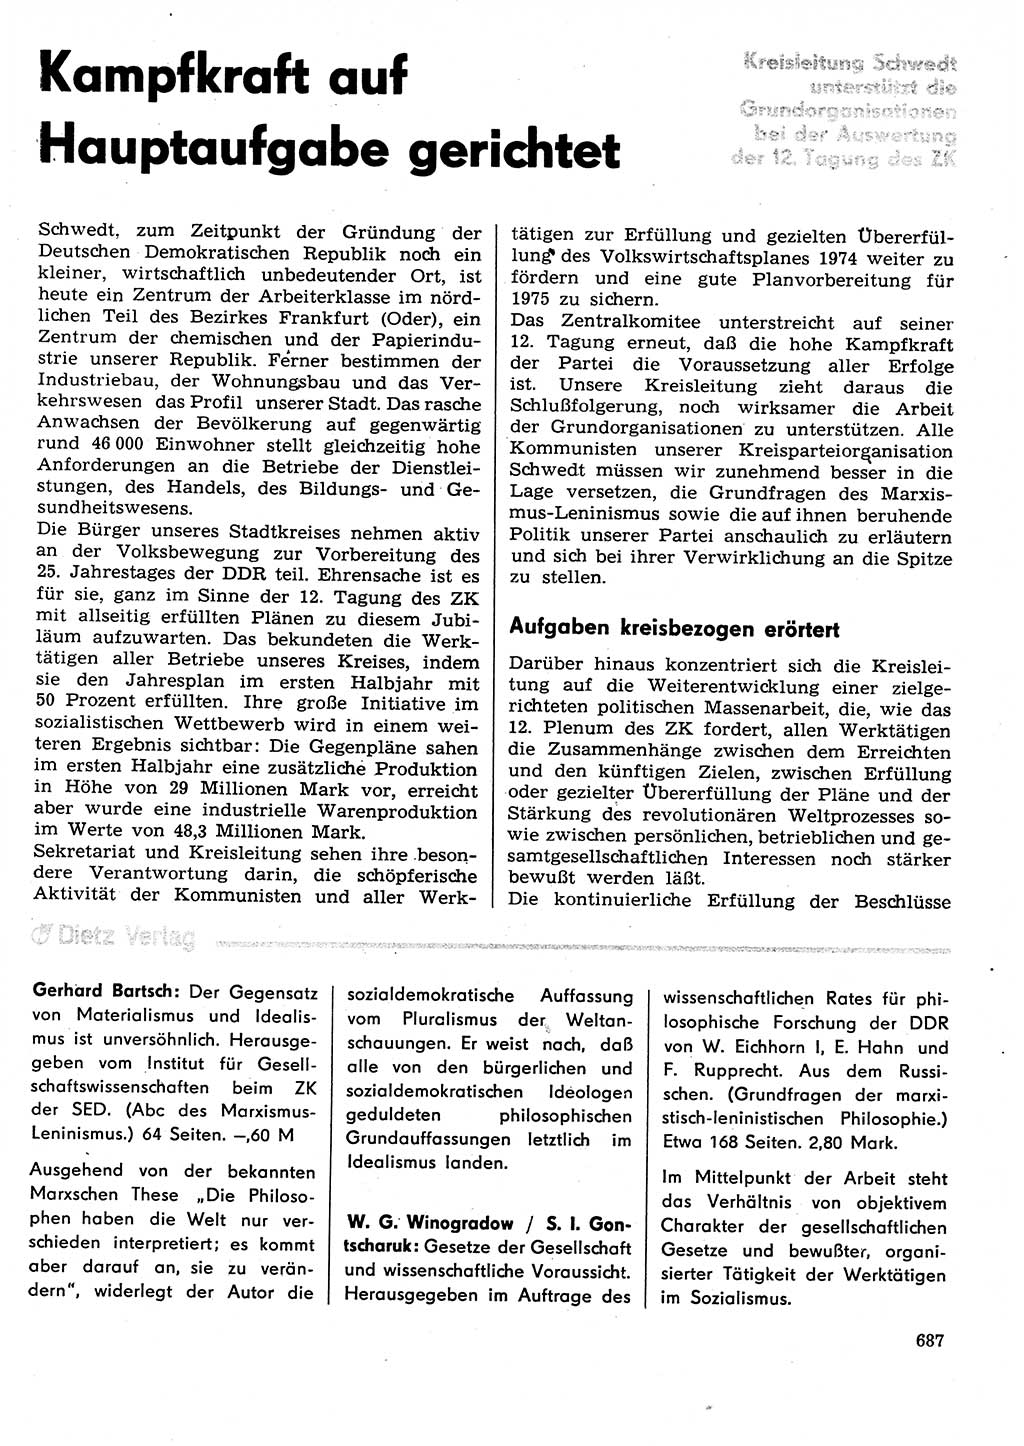 Neuer Weg (NW), Organ des Zentralkomitees (ZK) der SED (Sozialistische Einheitspartei Deutschlands) für Fragen des Parteilebens, 29. Jahrgang [Deutsche Demokratische Republik (DDR)] 1974, Seite 687 (NW ZK SED DDR 1974, S. 687)